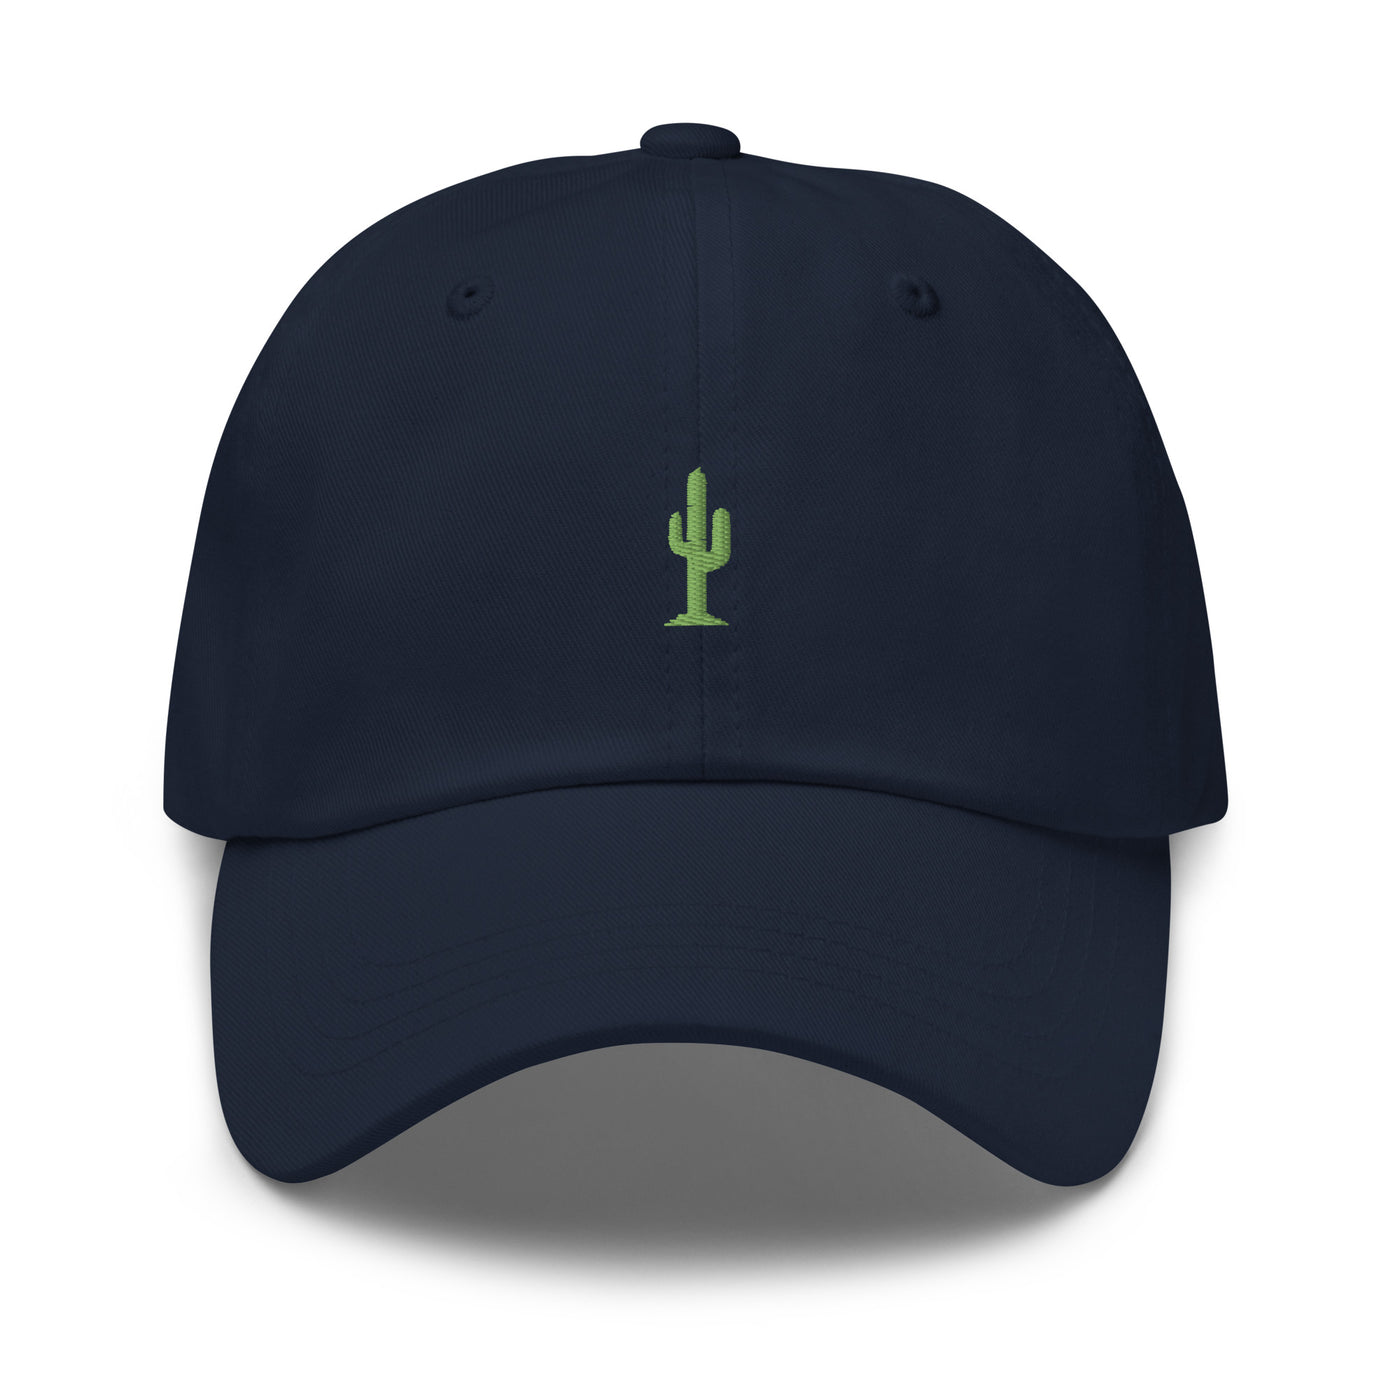 Arizona Cactus Unisex Hat